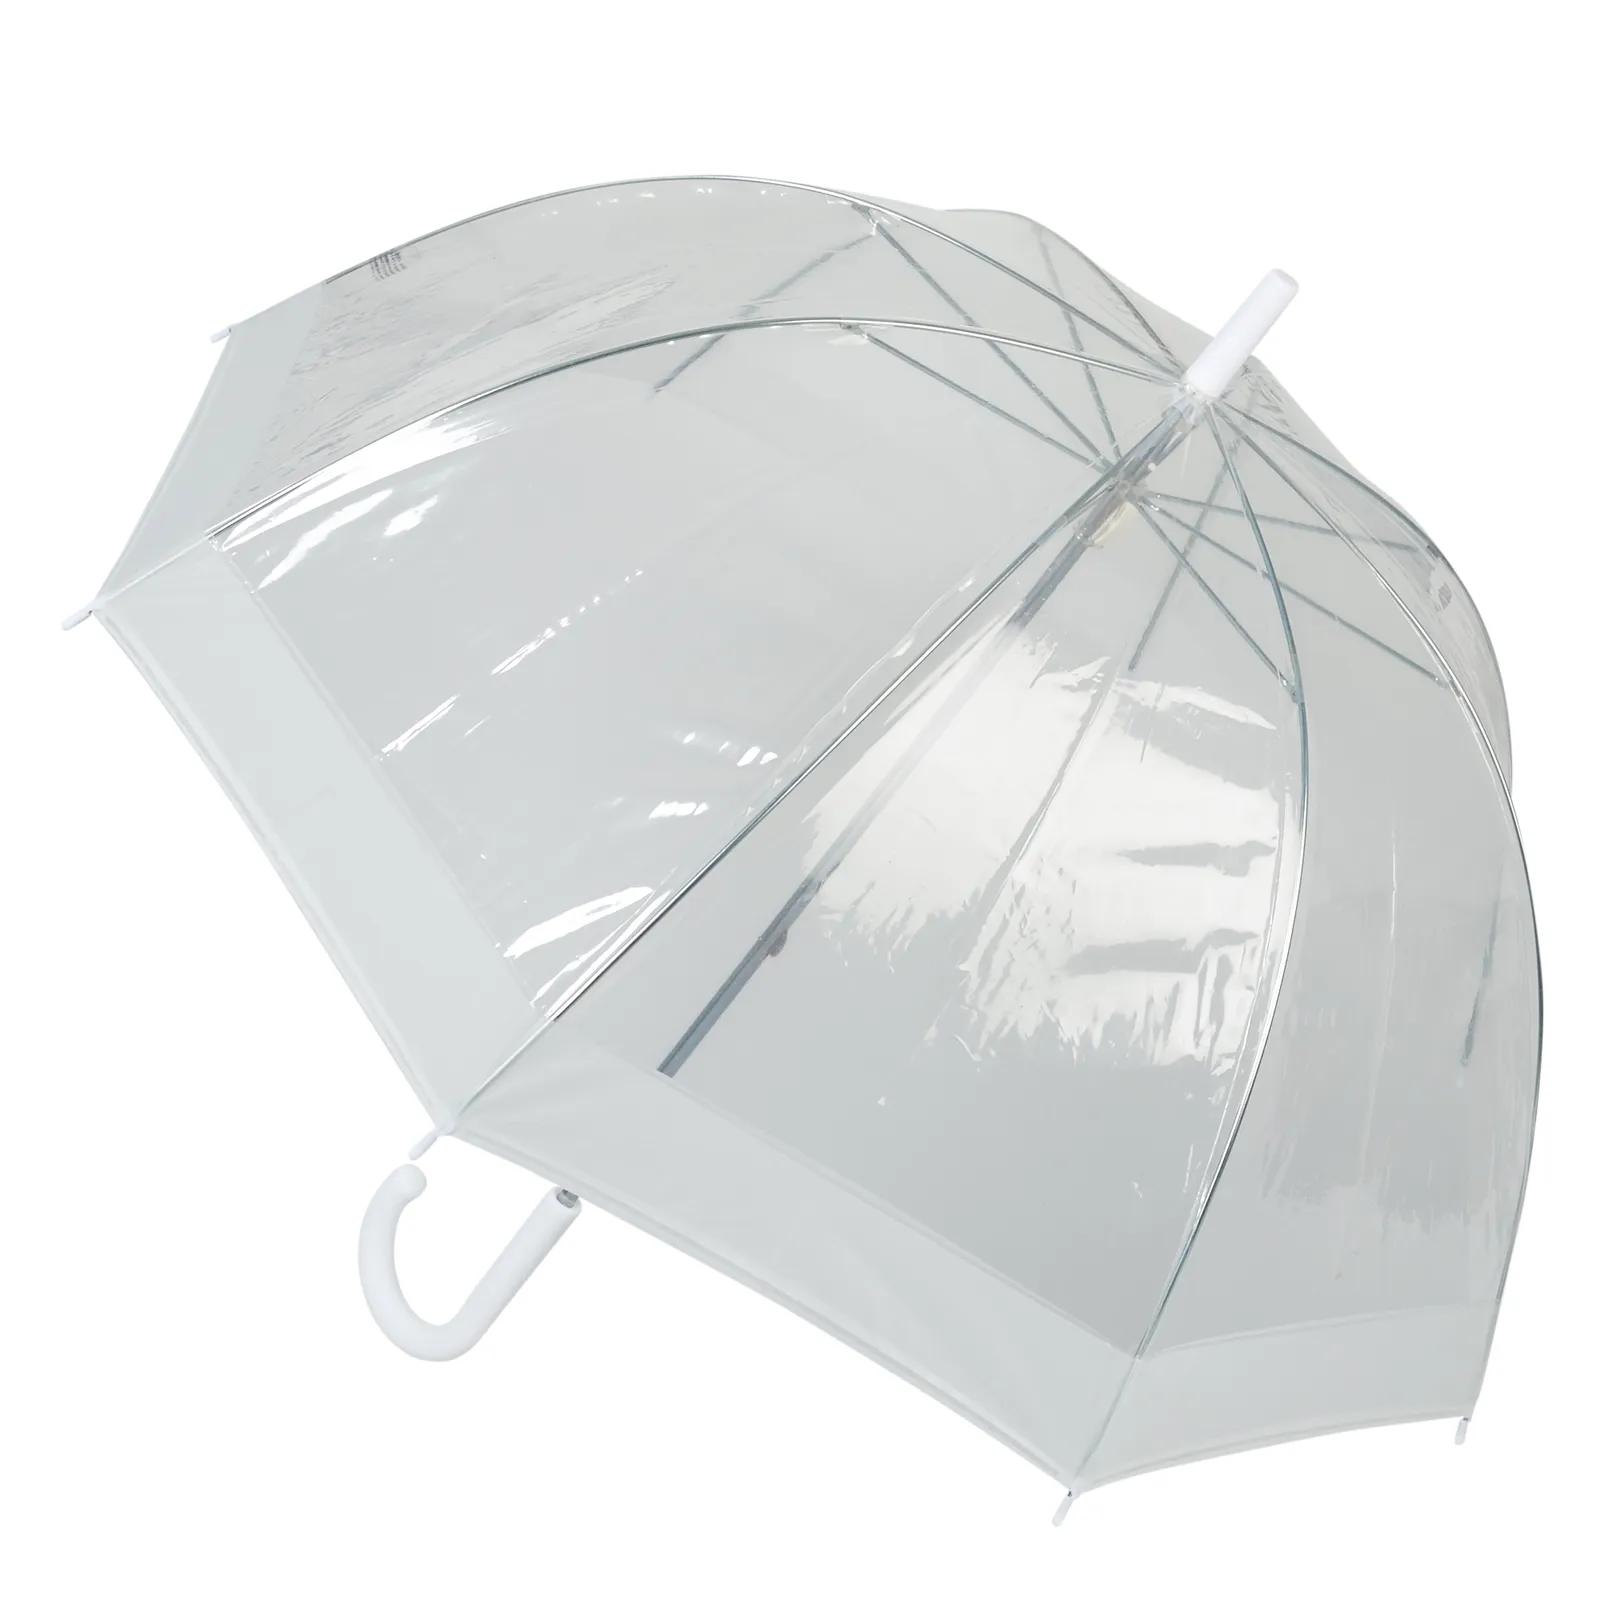 Transparent og fin paraply fra Happy Rain